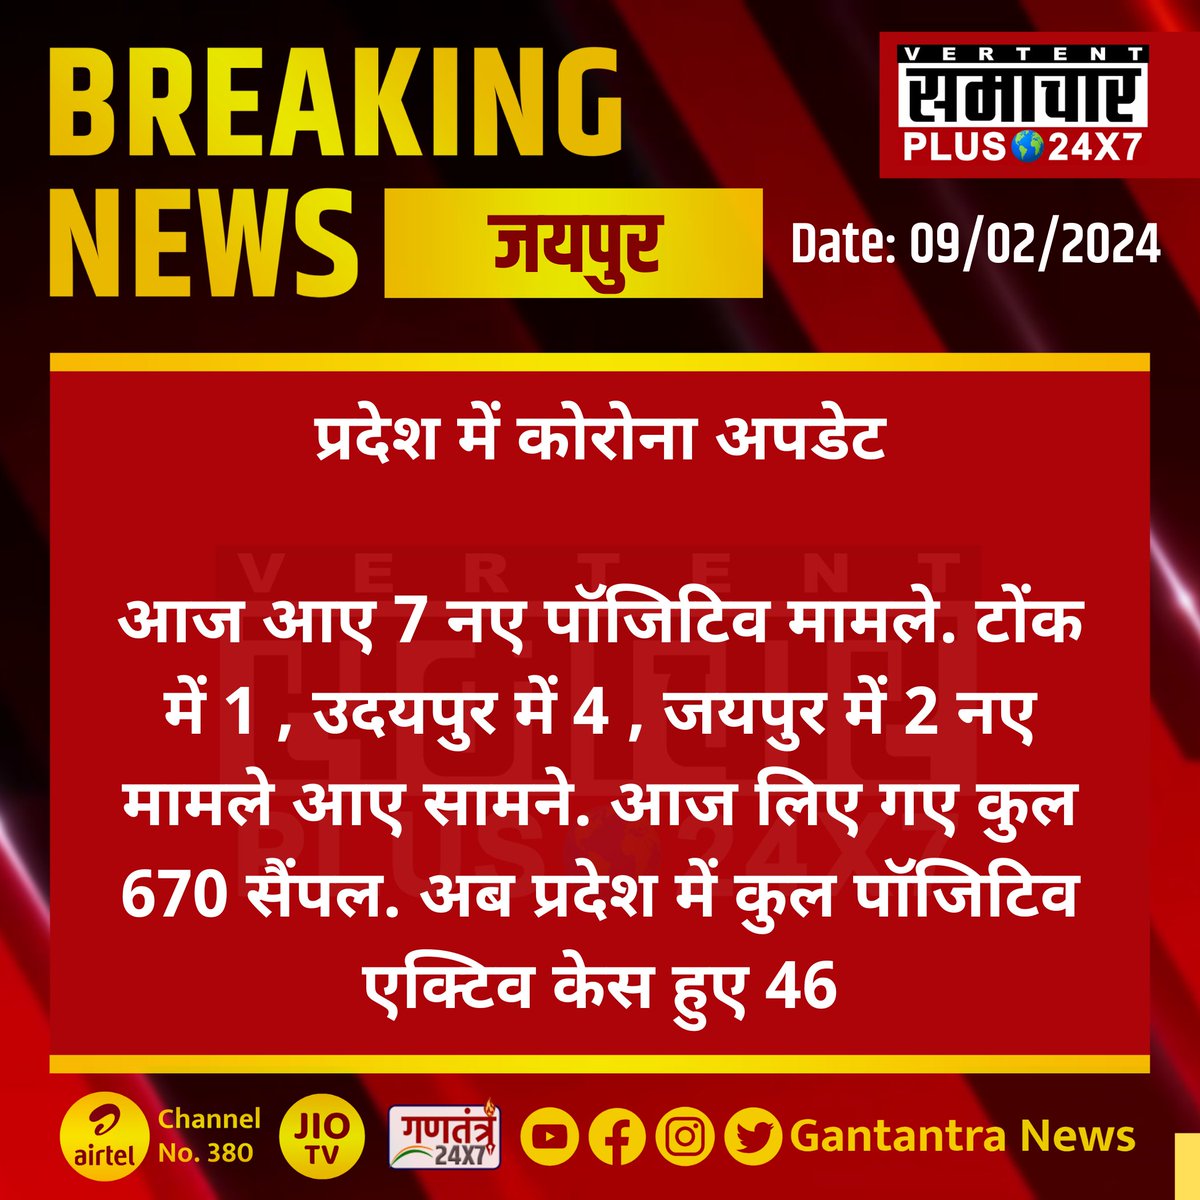 जयपुर : प्रदेश में कोरोना अपडेट

आज आए 7 नए पॉजिटिव मामले. टोंक में 1 , उदयपुर में 4 , जयपुर में 2 नए मामले आए सामने.  आज लिए गए कुल 670 सैंपल. अब प्रदेश में कुल पॉजिटिव एक्टिव केस हुए 46

#Jaipur #CoronavirusUpdates #Rajasthan #GantantraNews